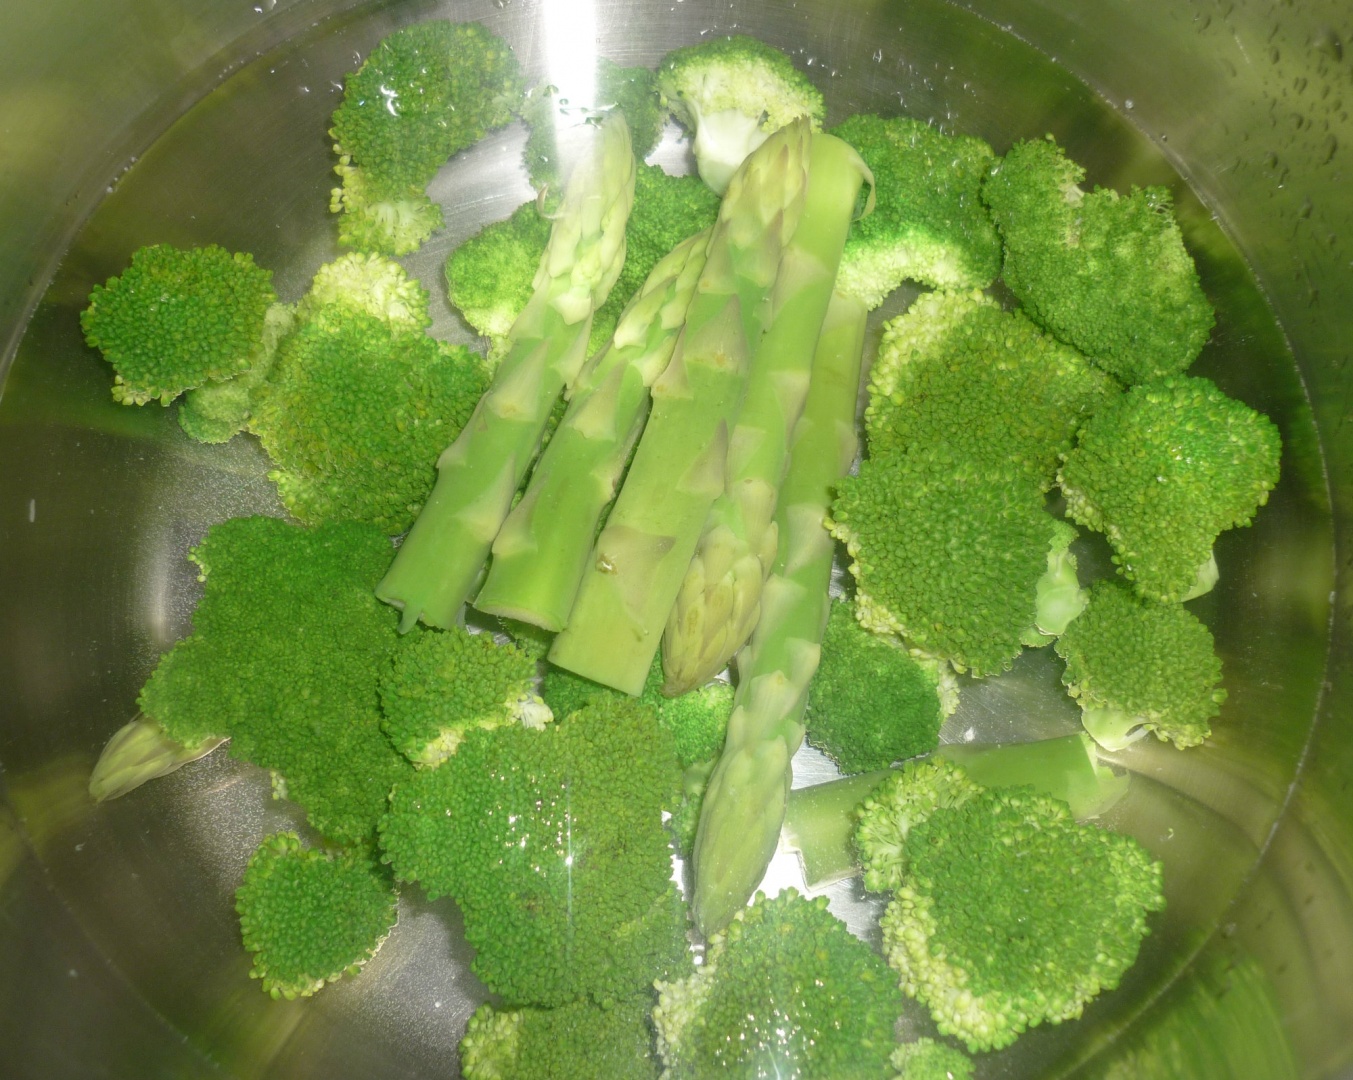 Supa crema de broccoli si sparanghel verde